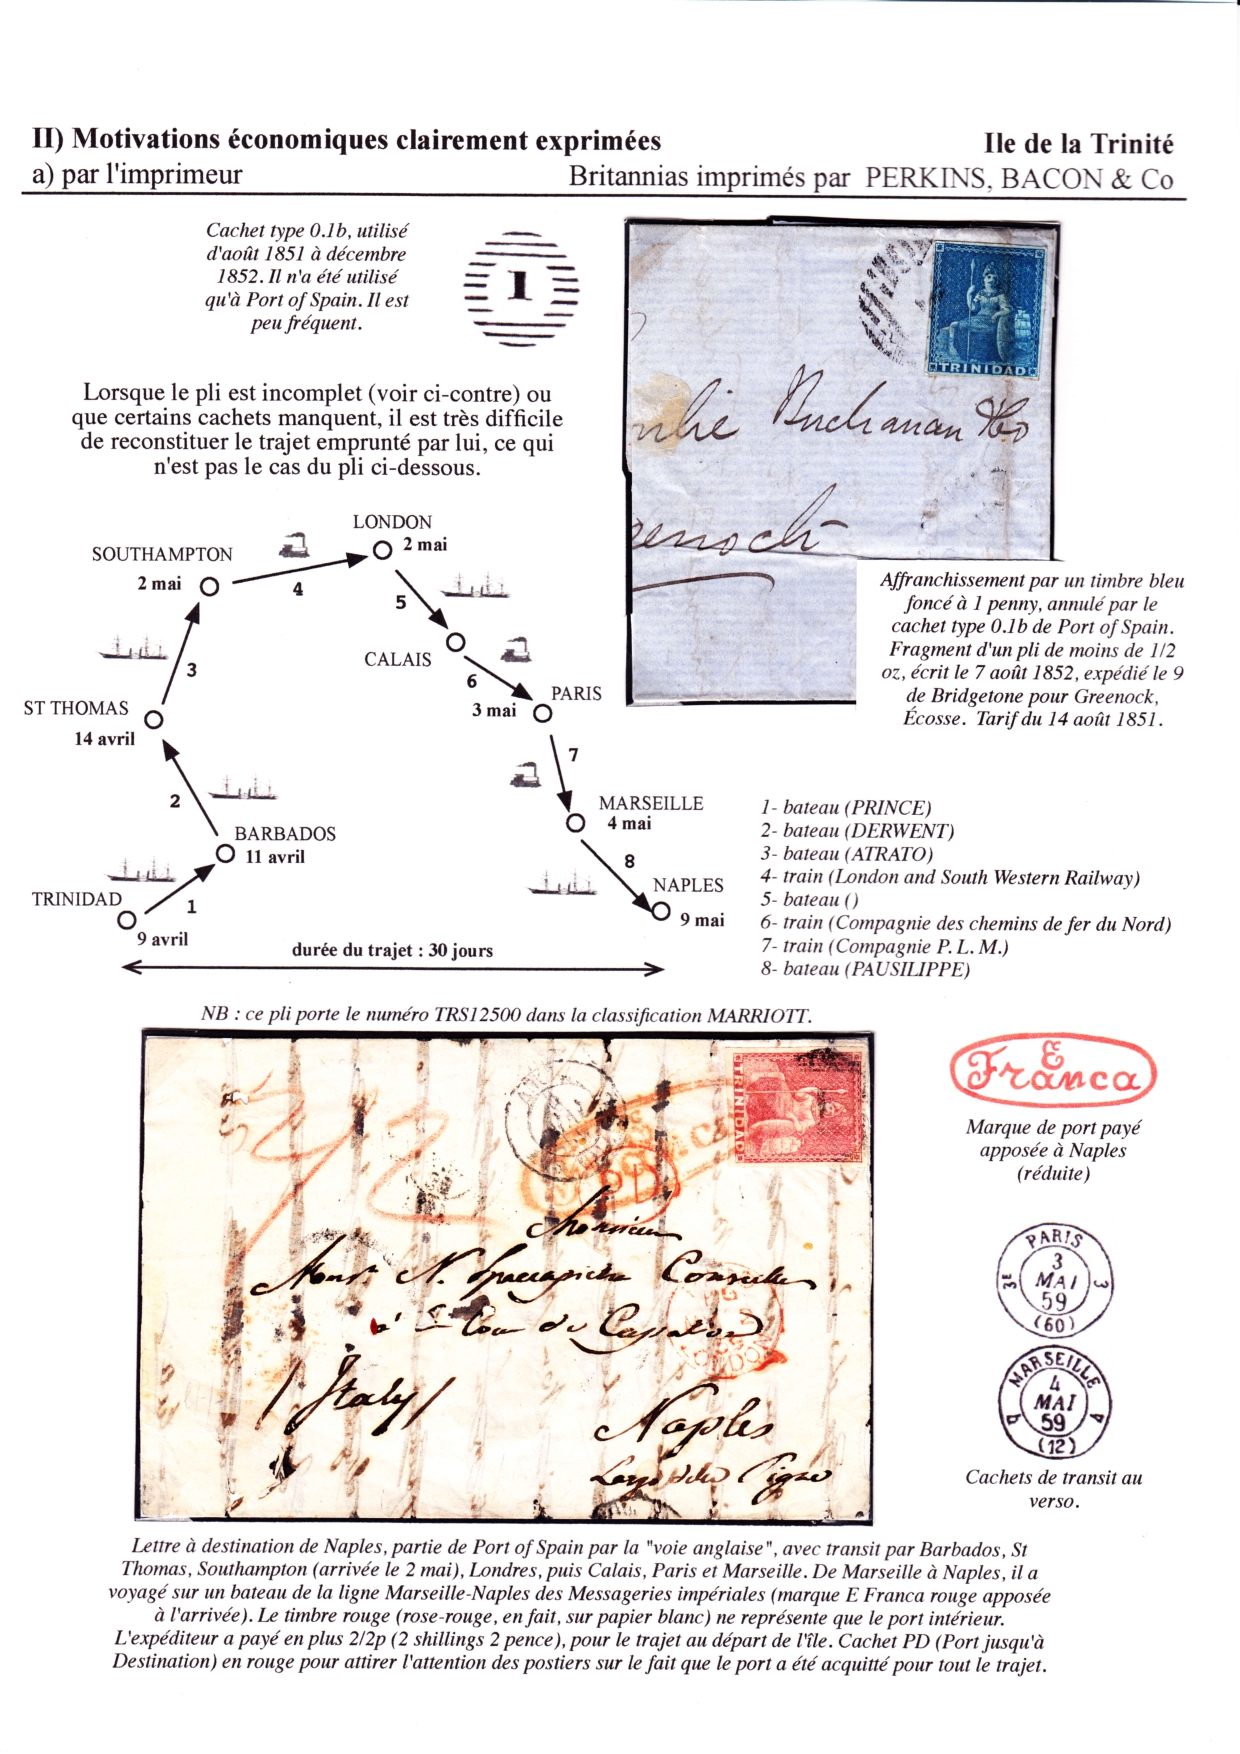 Les d��buts des timbres sans valeur faciale apparente p. 27